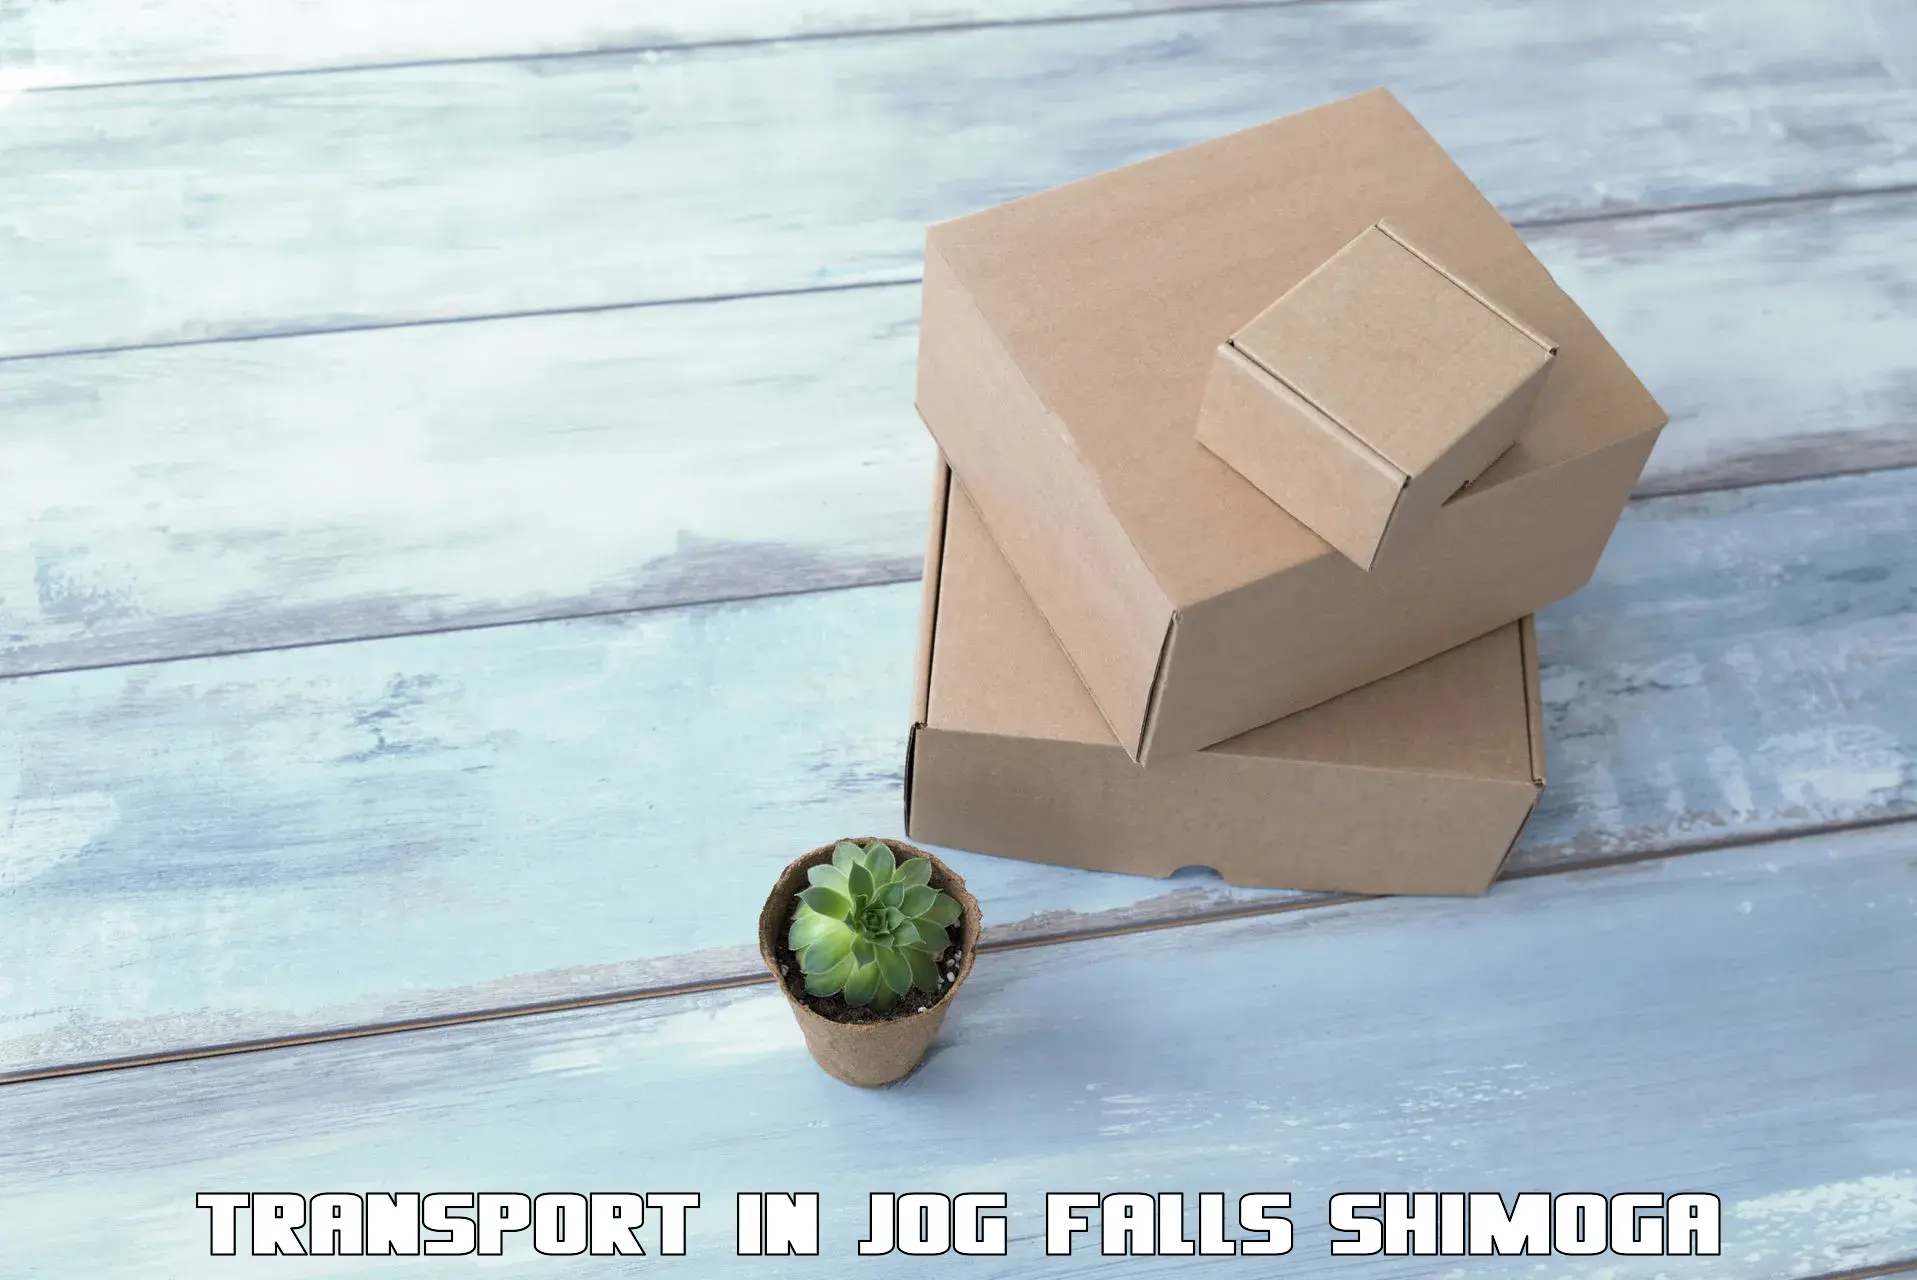 Furniture transport service in Jog Falls Shimoga